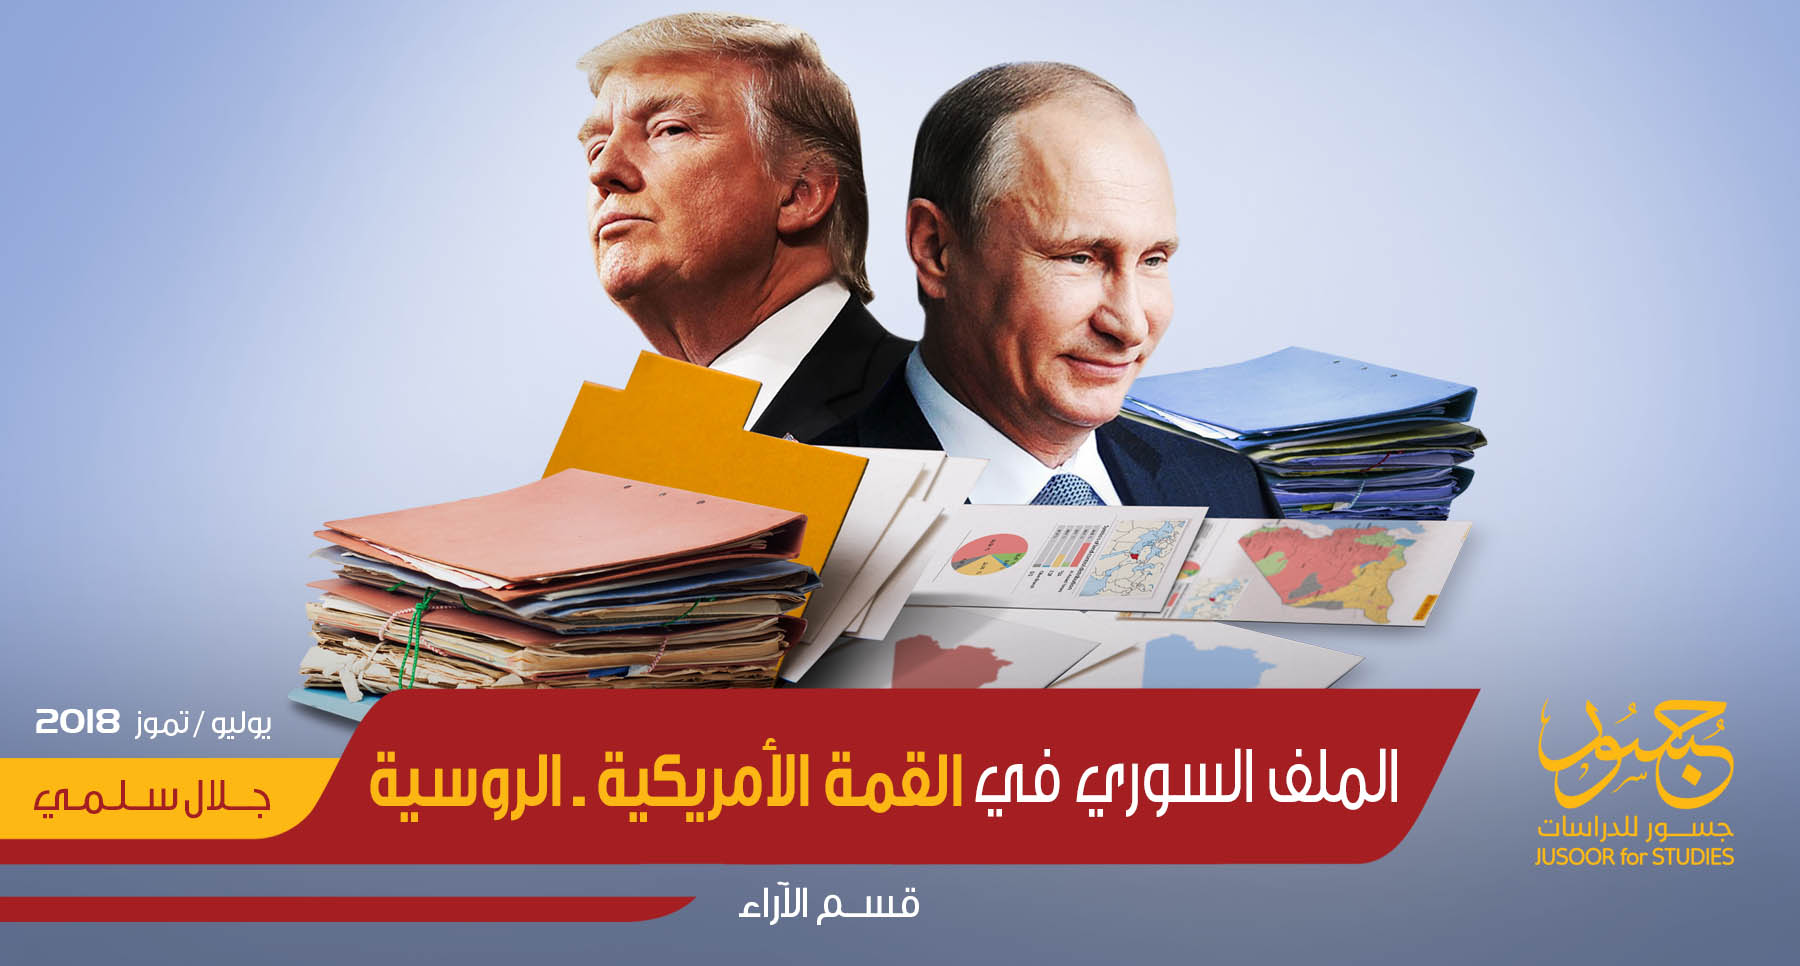   الملف السوري في القمة الأمريكية ـ الروسية